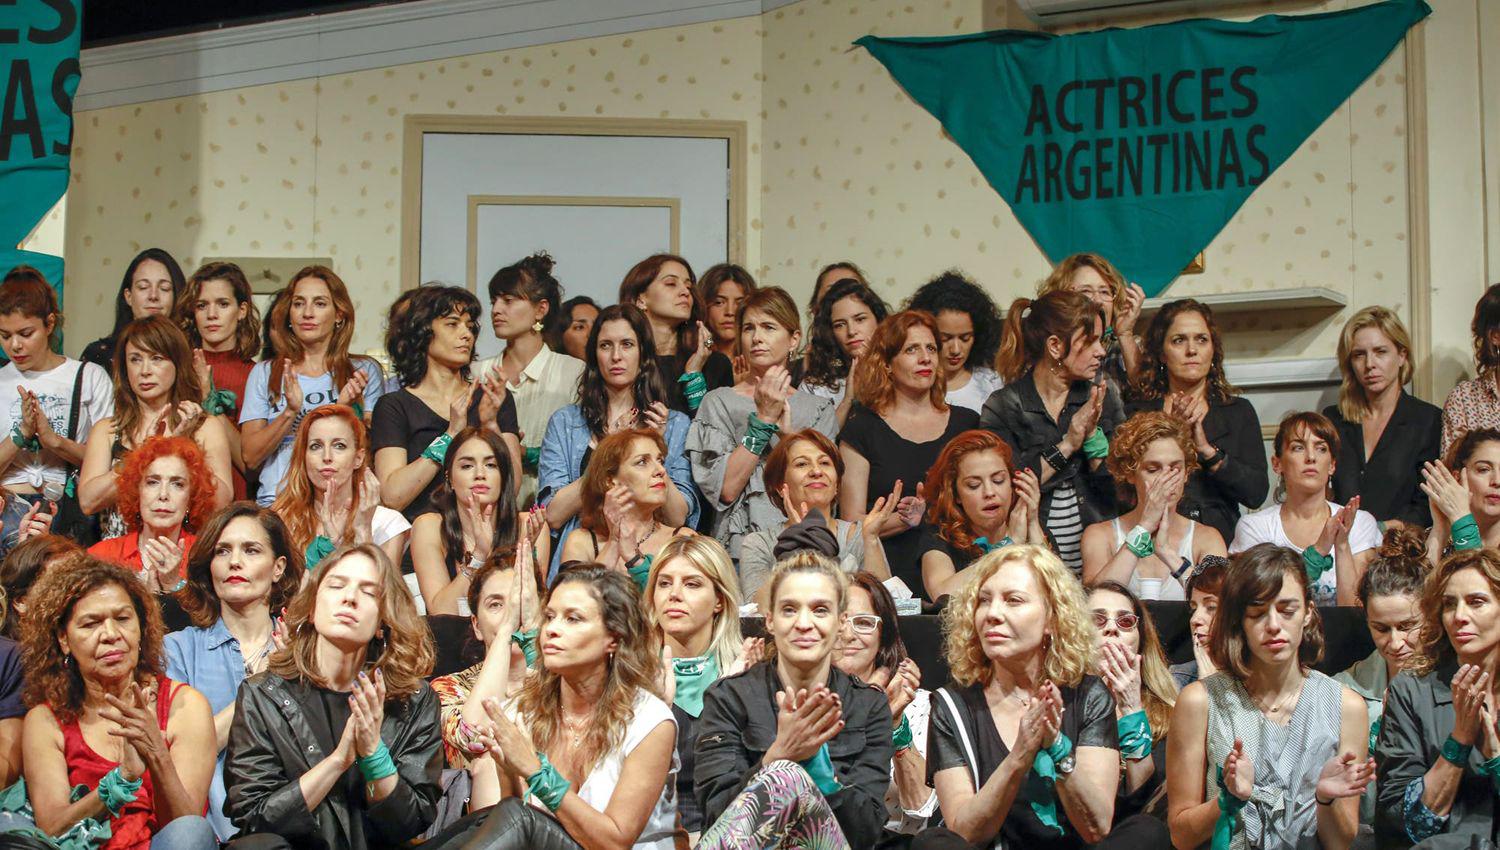 Actrices Argentinas rechazoacute que le den prisioacuten domiciliaria a violadores o acusados de violencia de geacutenero